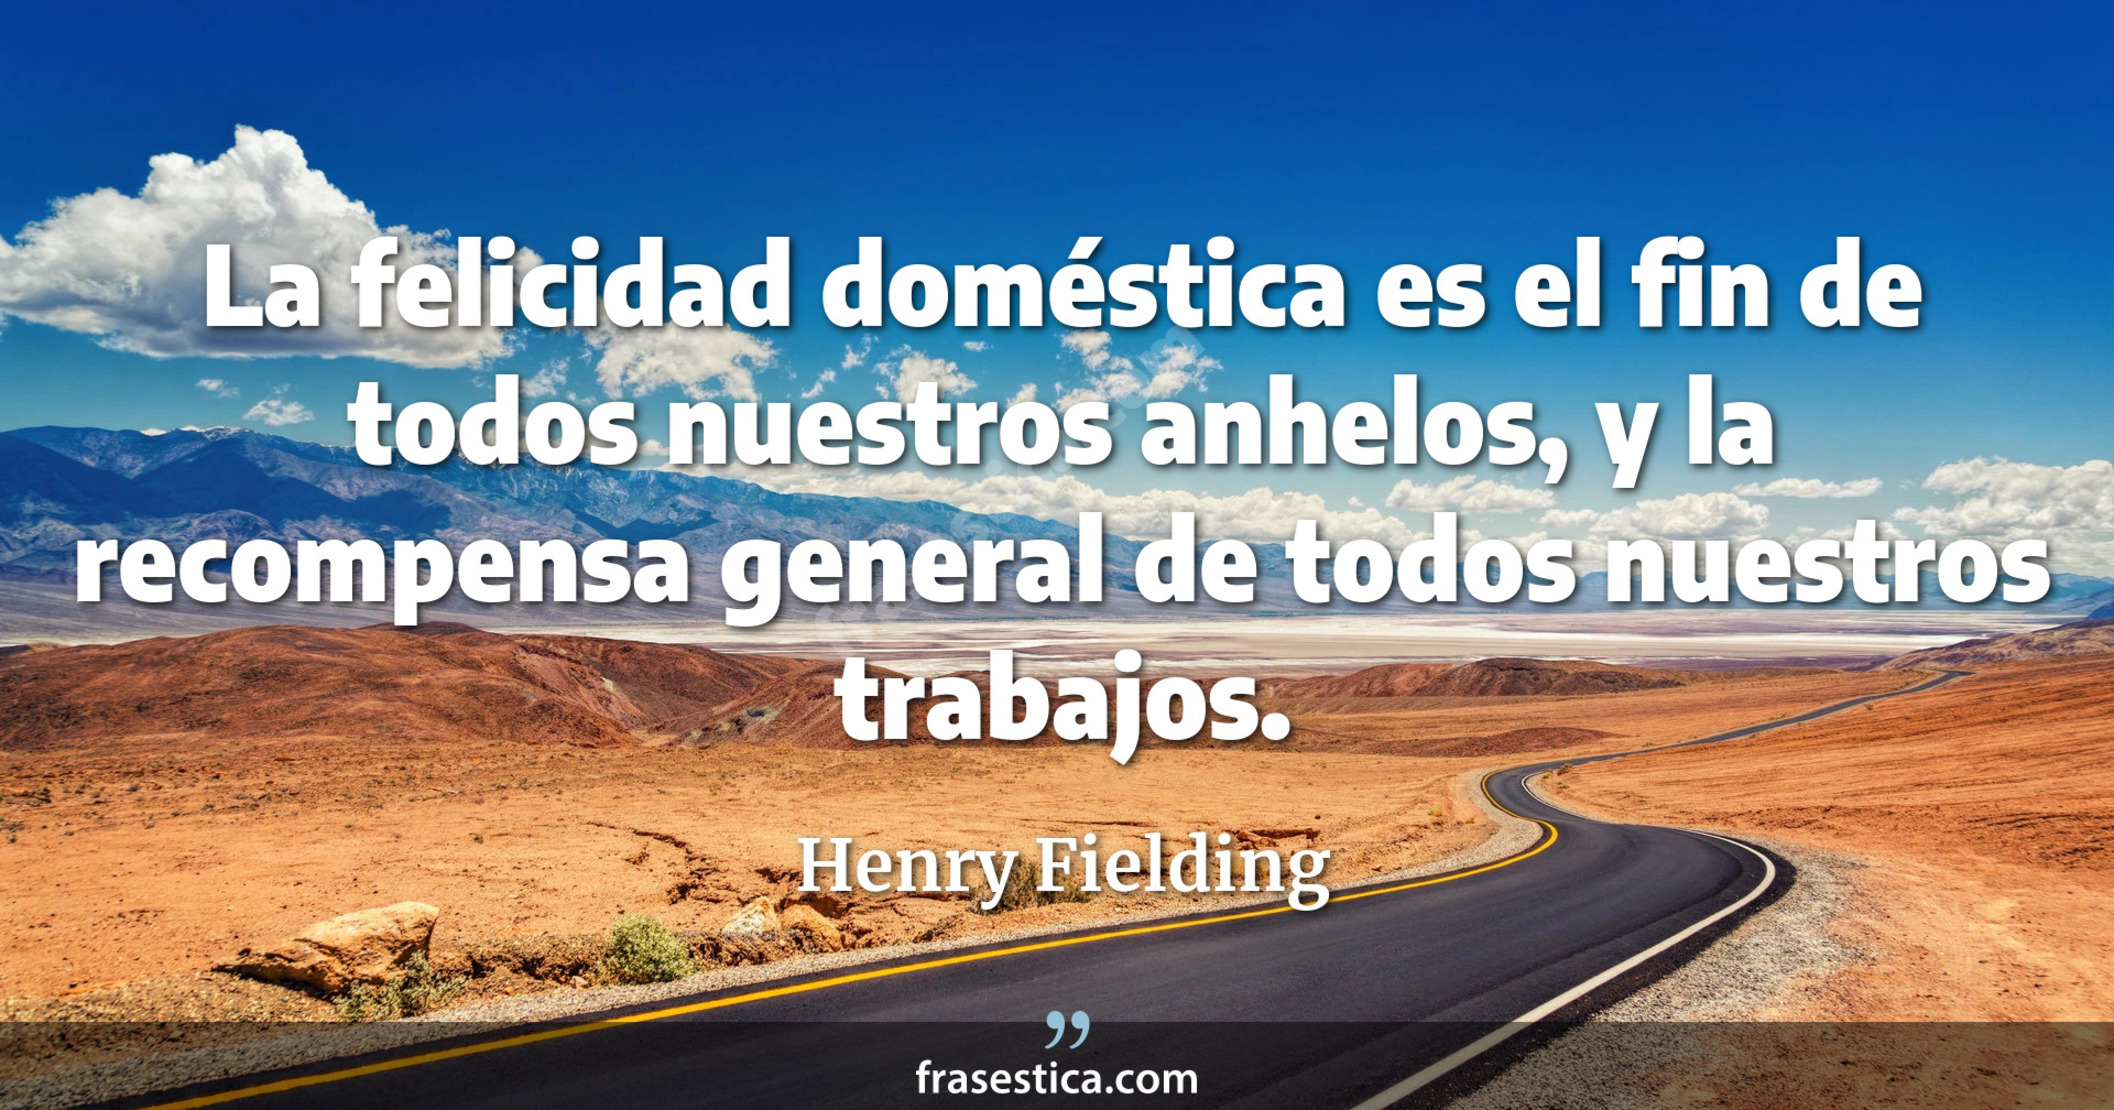 La felicidad doméstica es el fin de todos nuestros anhelos, y la recompensa general de todos nuestros trabajos. - Henry Fielding